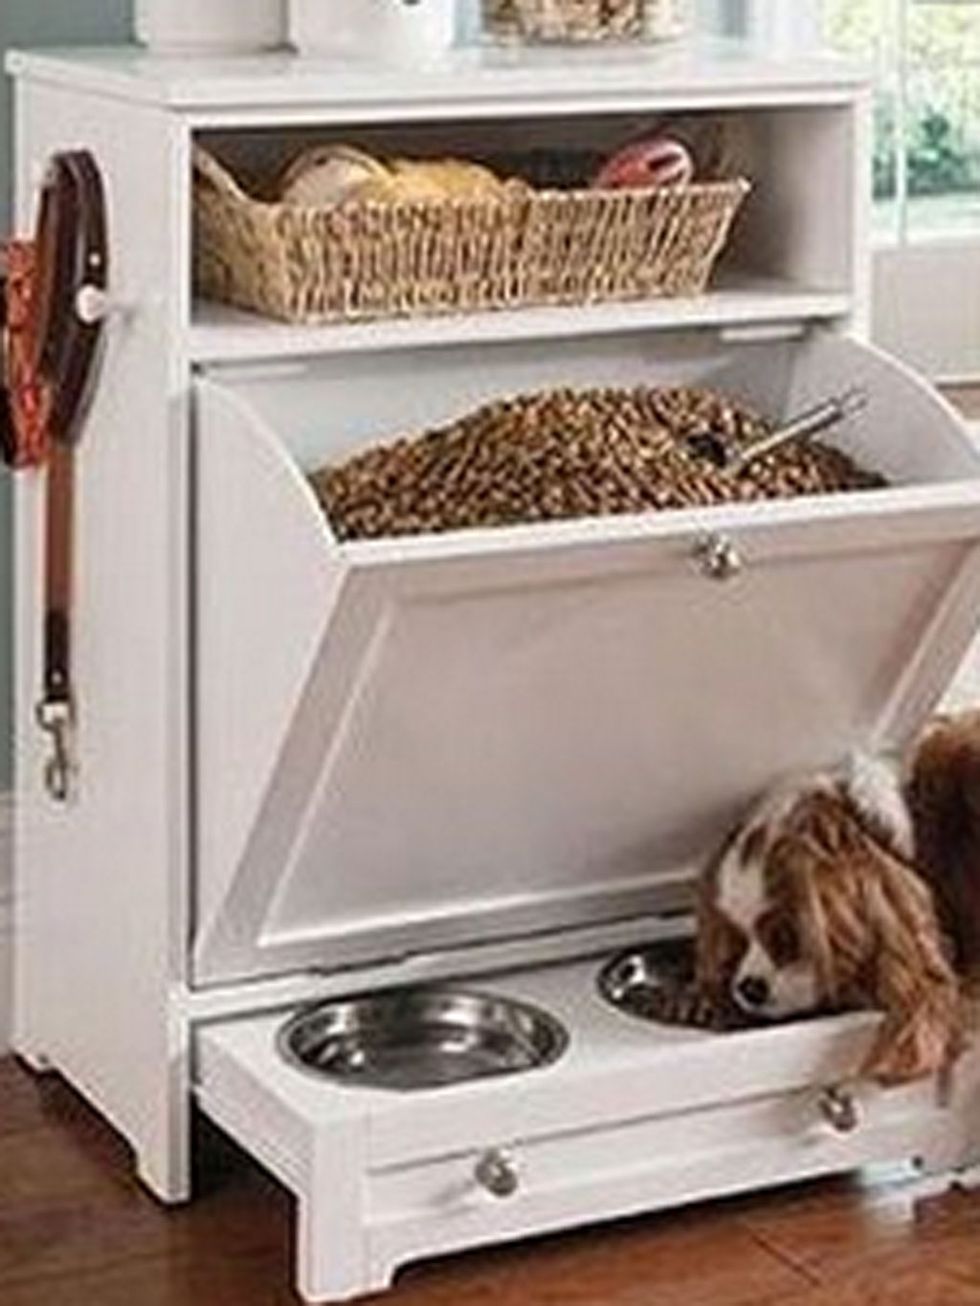 Cómo adaptar espacios para perros en casa? – The Home Depot Blog